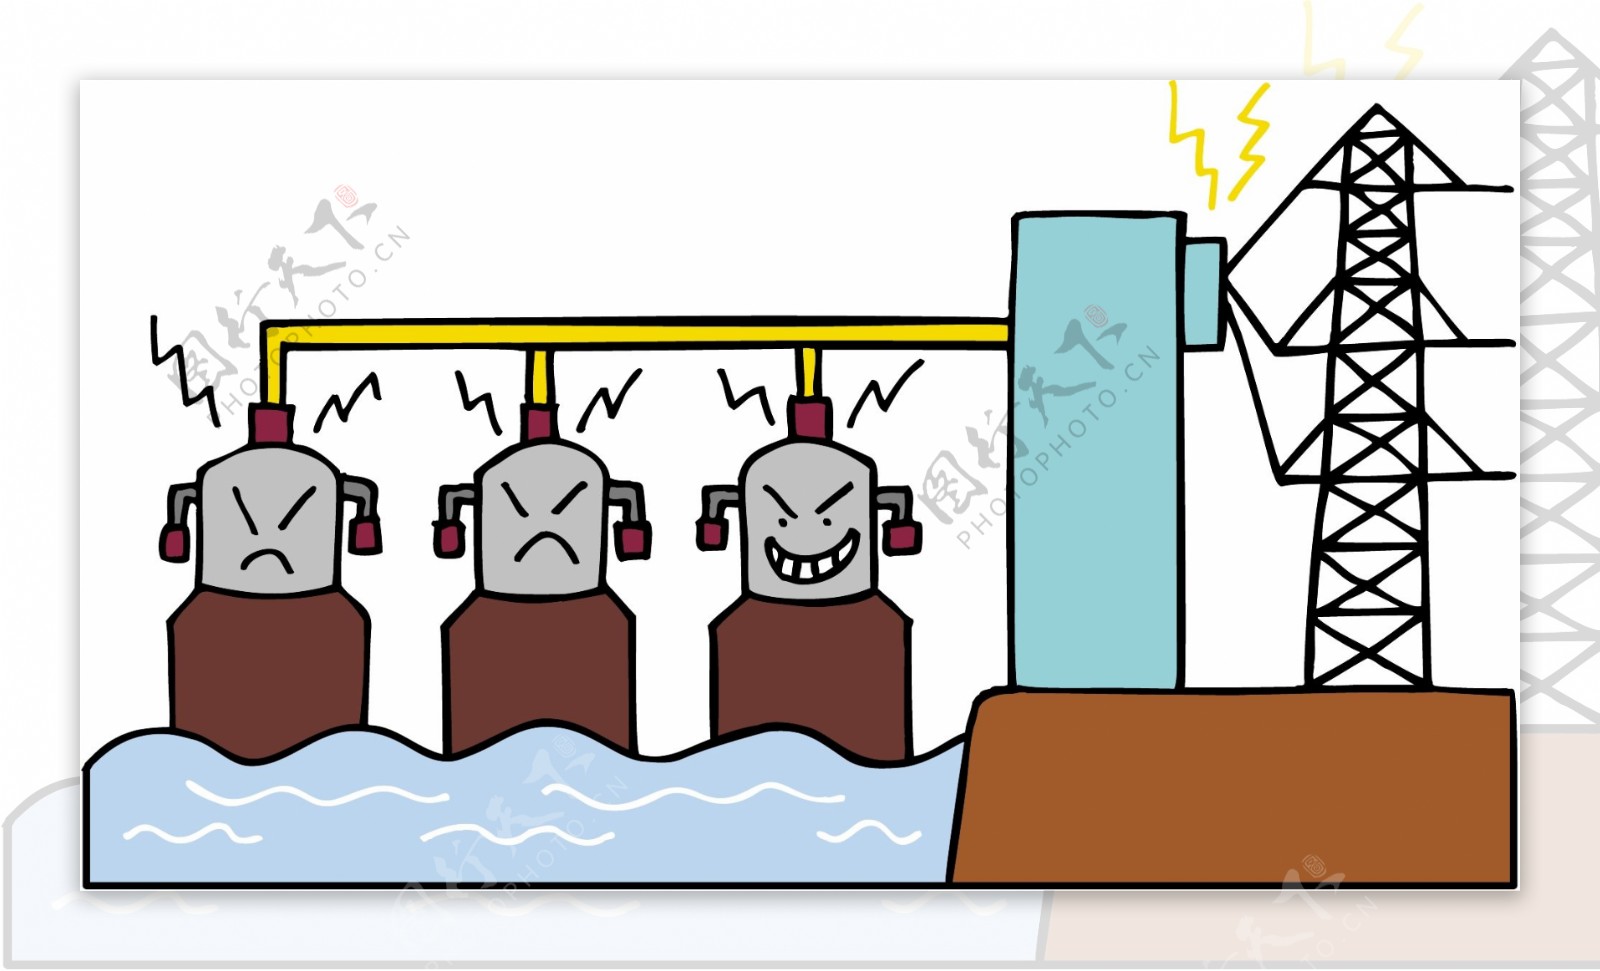 水力发电漫画图片